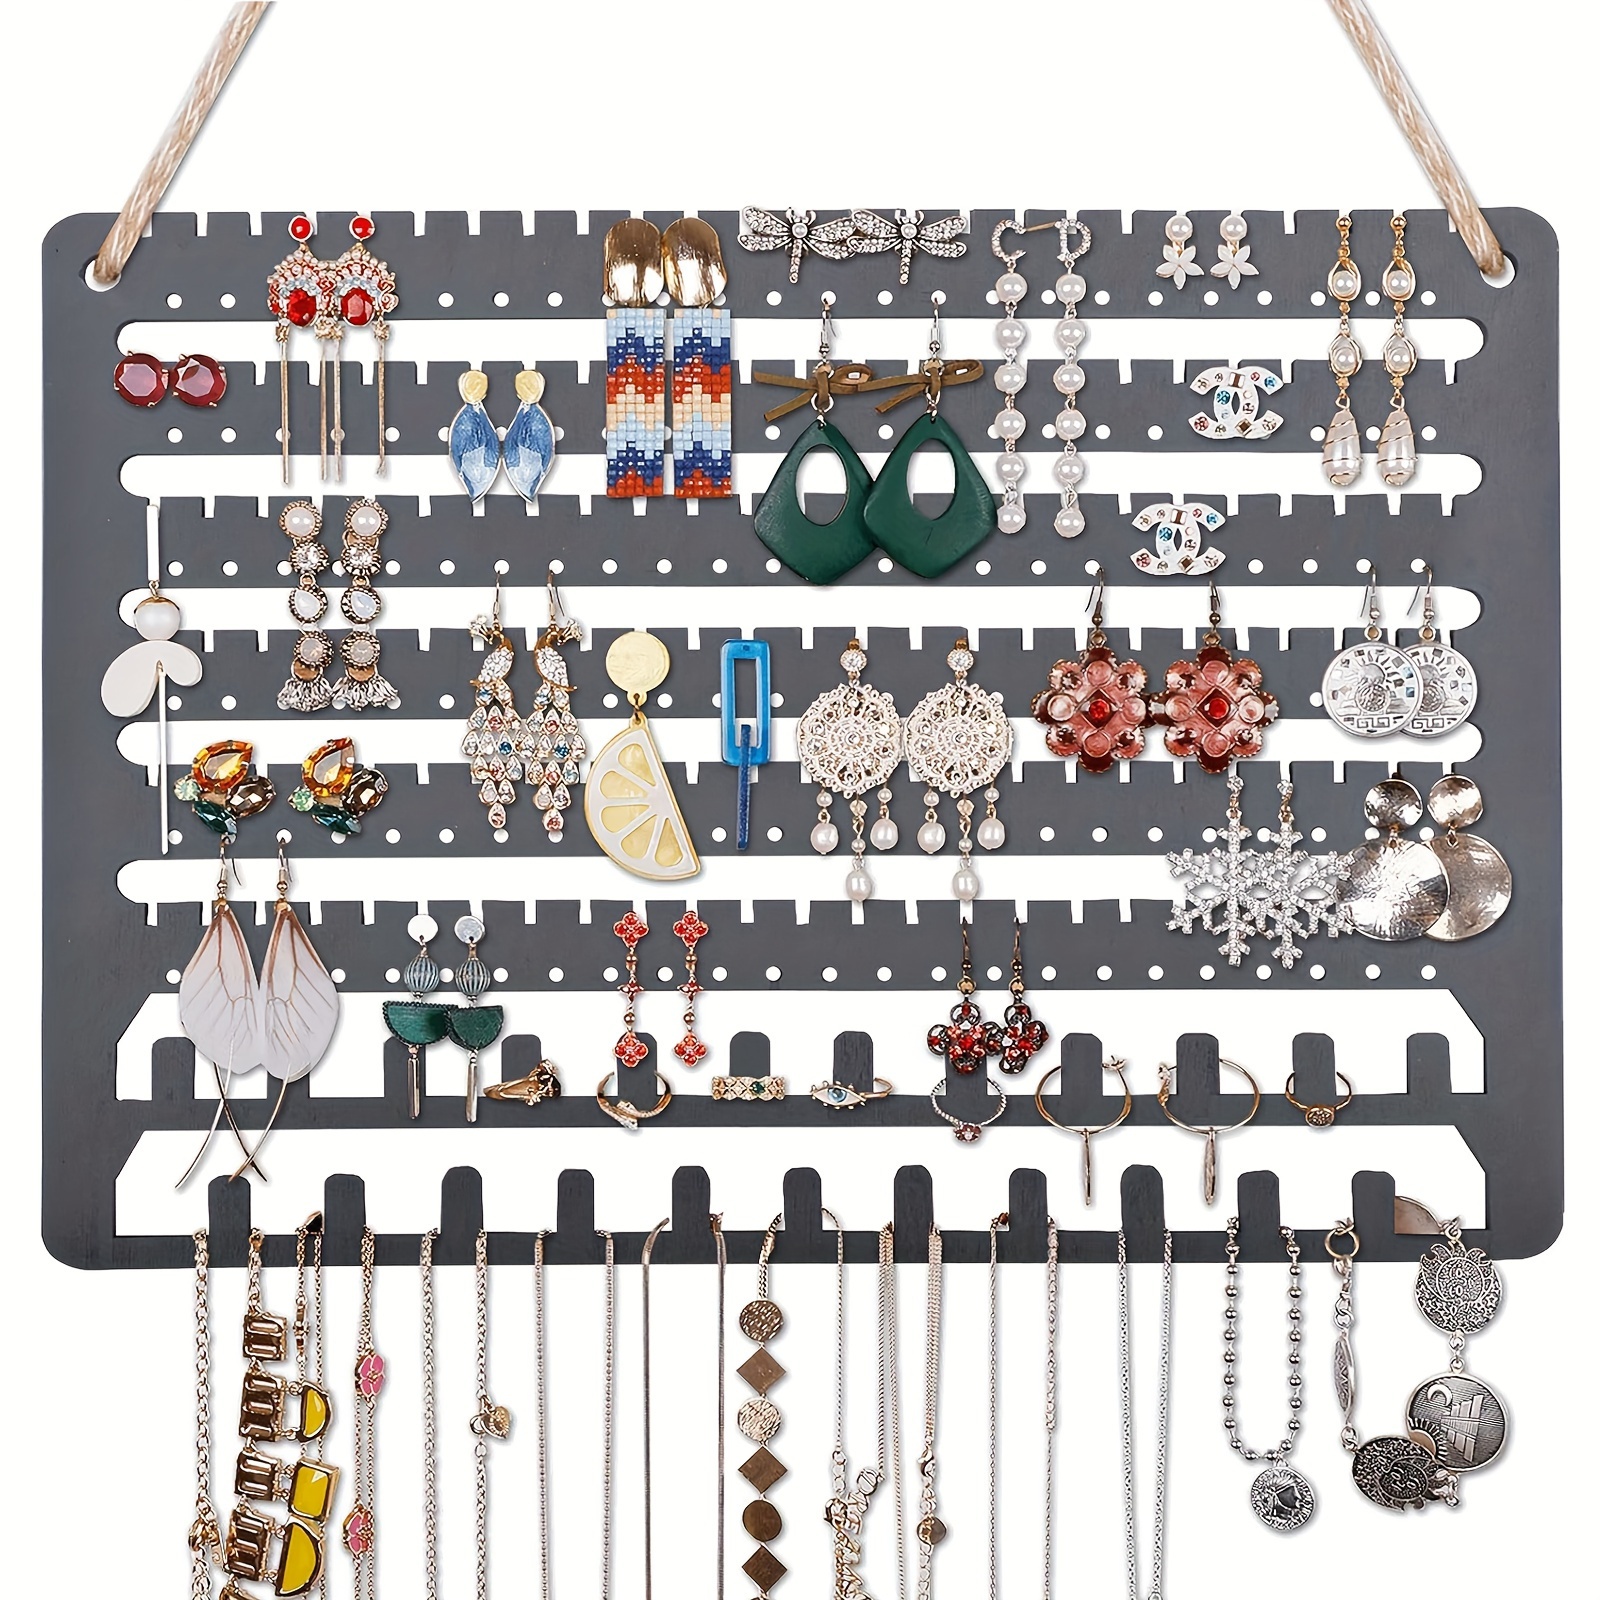 Organizador de Collares Mujer,Porta Collares para Joyeria Forma de T,Joyero  para Collares y Porta Pulseras de 3 Niveles,adecuado para Guardar y